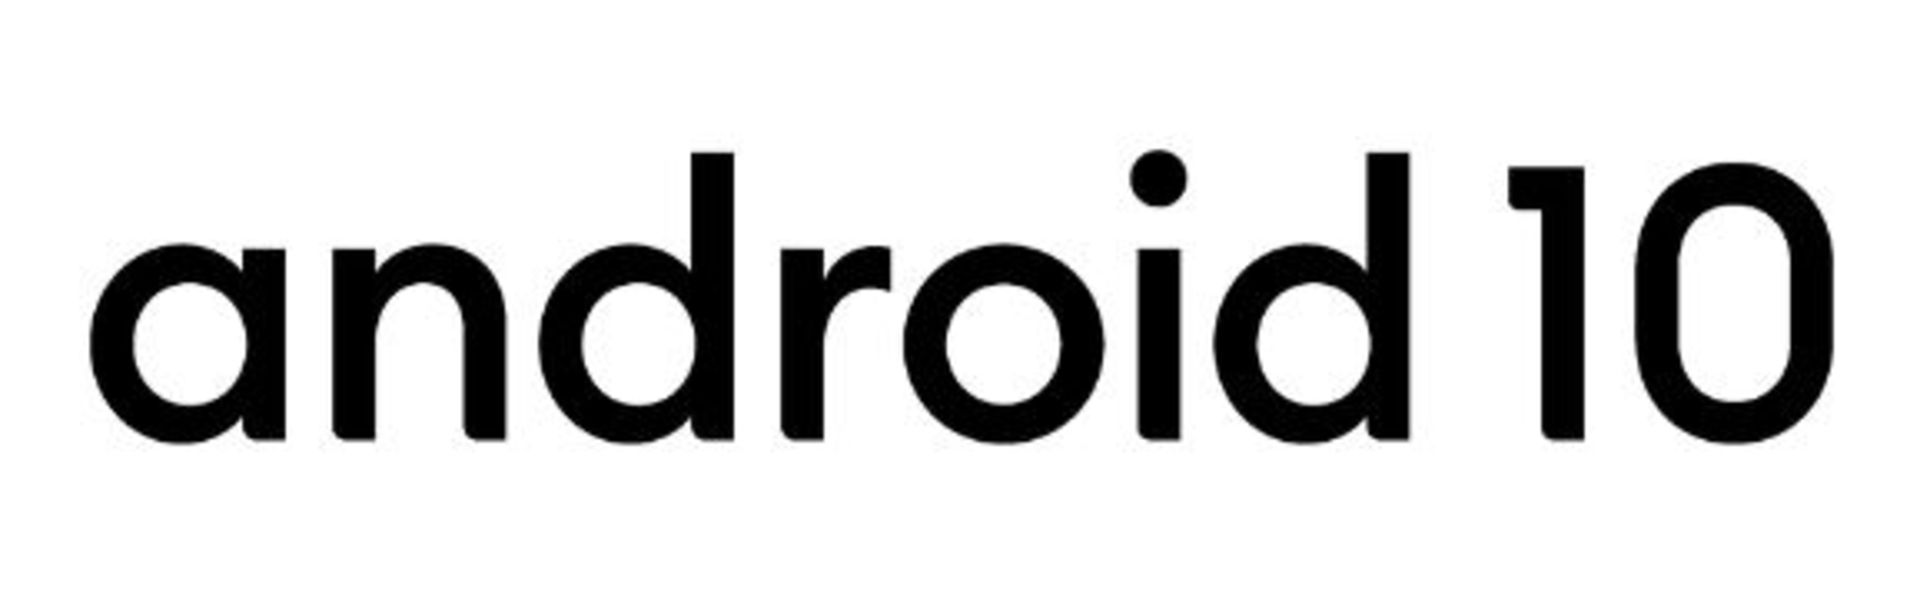 اندروید ۱۰ / Android 10